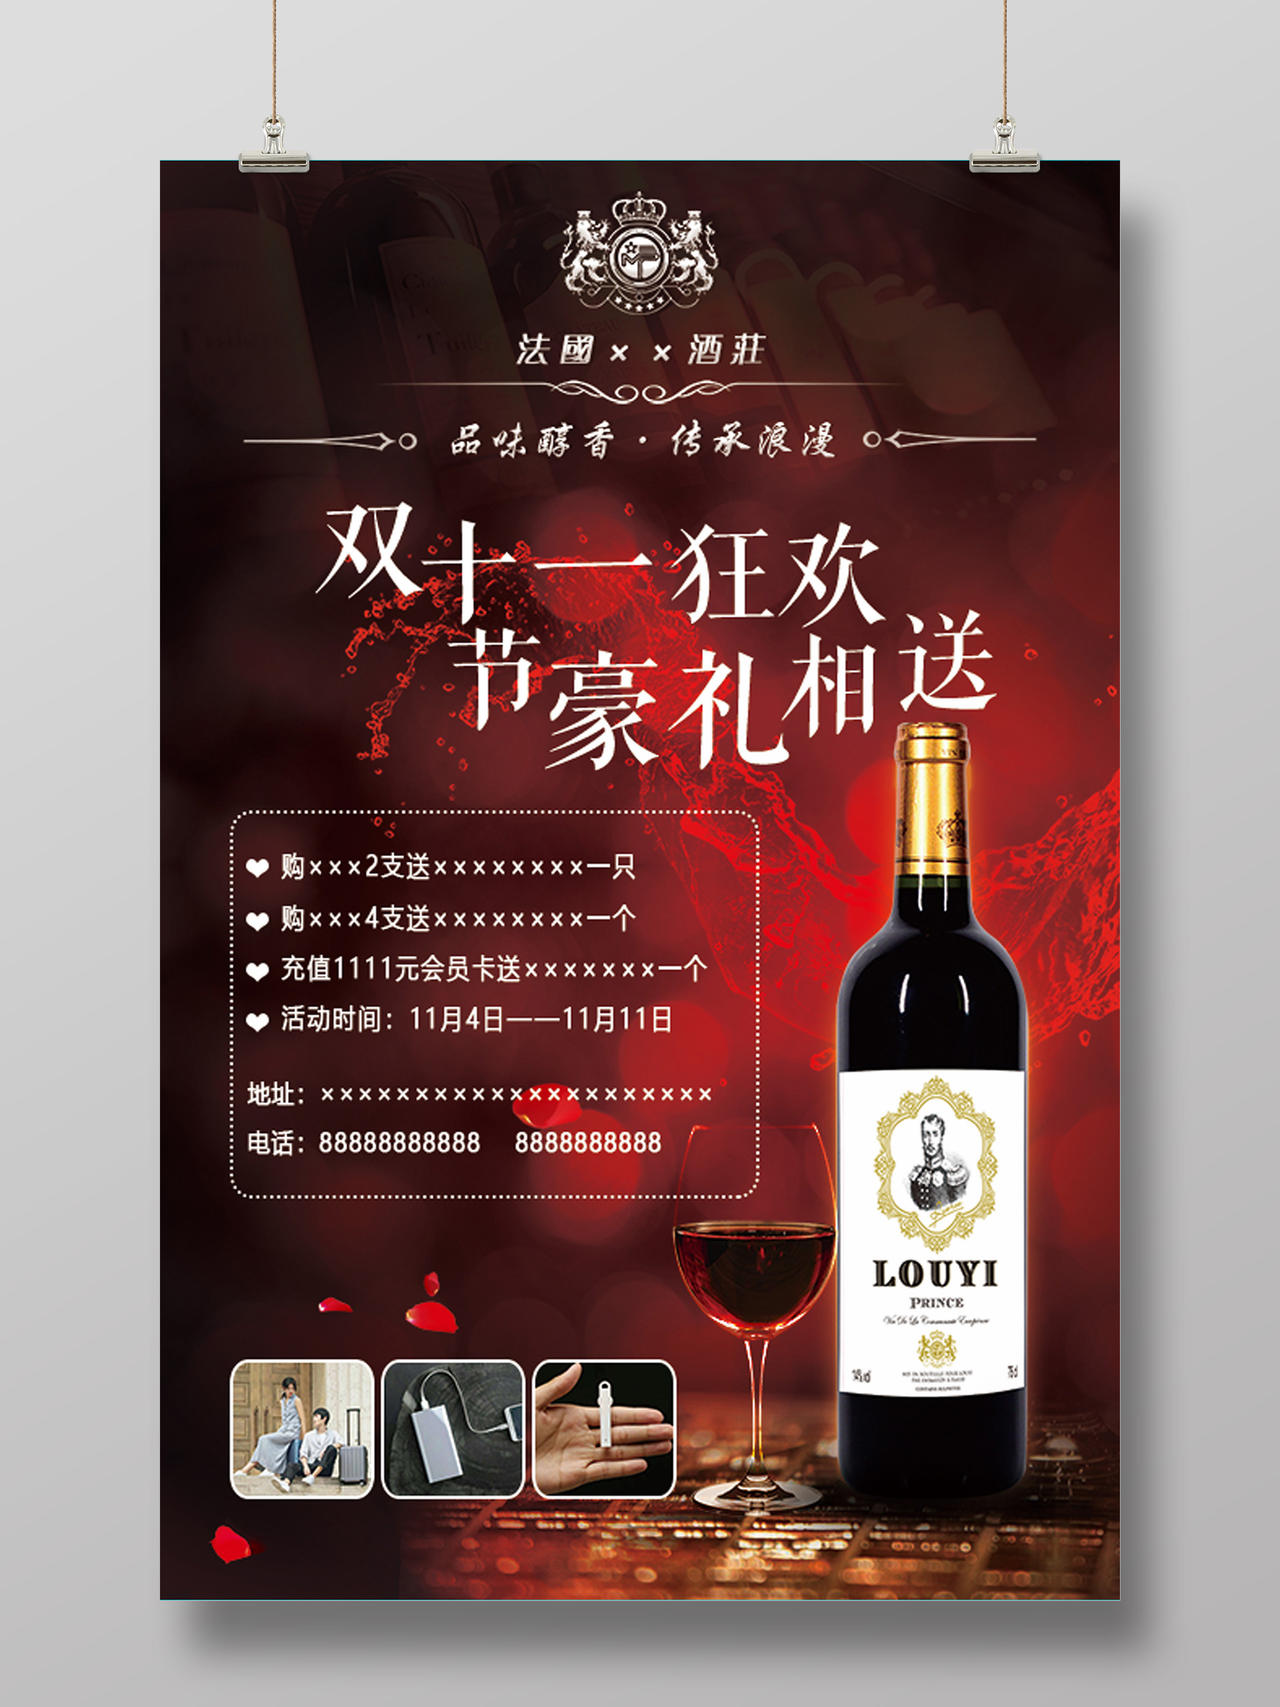 法国红酒酒水双十一豪礼促销宣传广告暗红海报设计